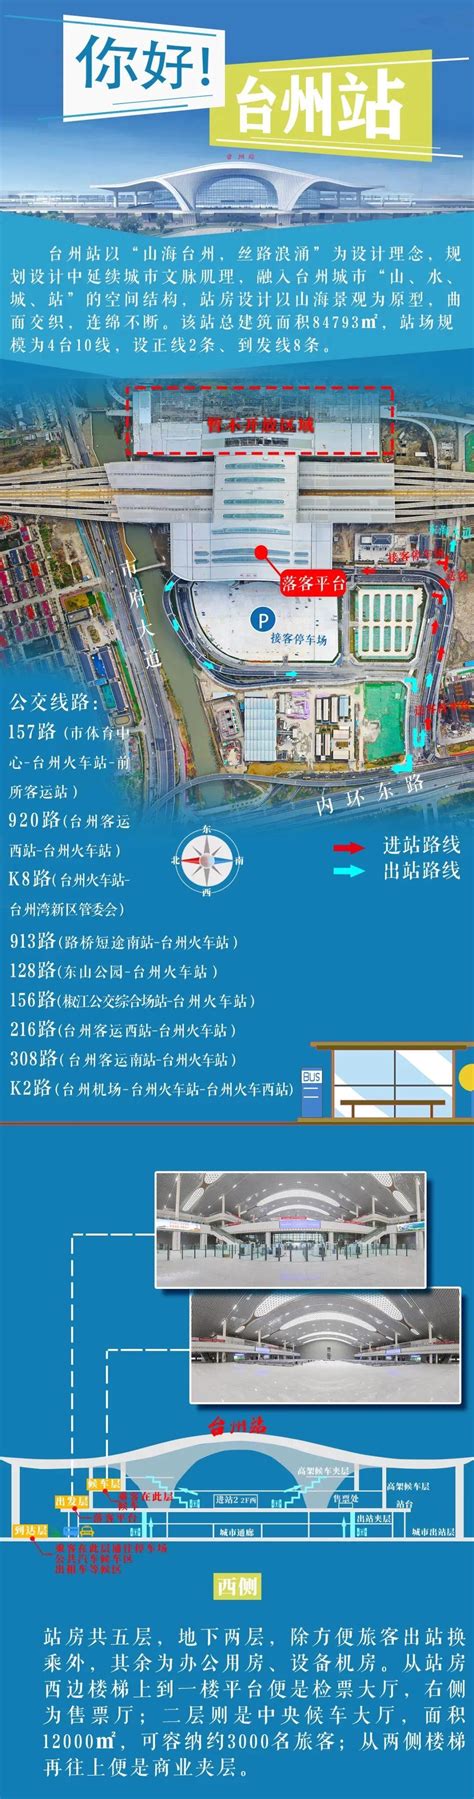 台州湾新区管委会负责人：迭代升级“三服务” 打造营商环境新高地-中国台州网